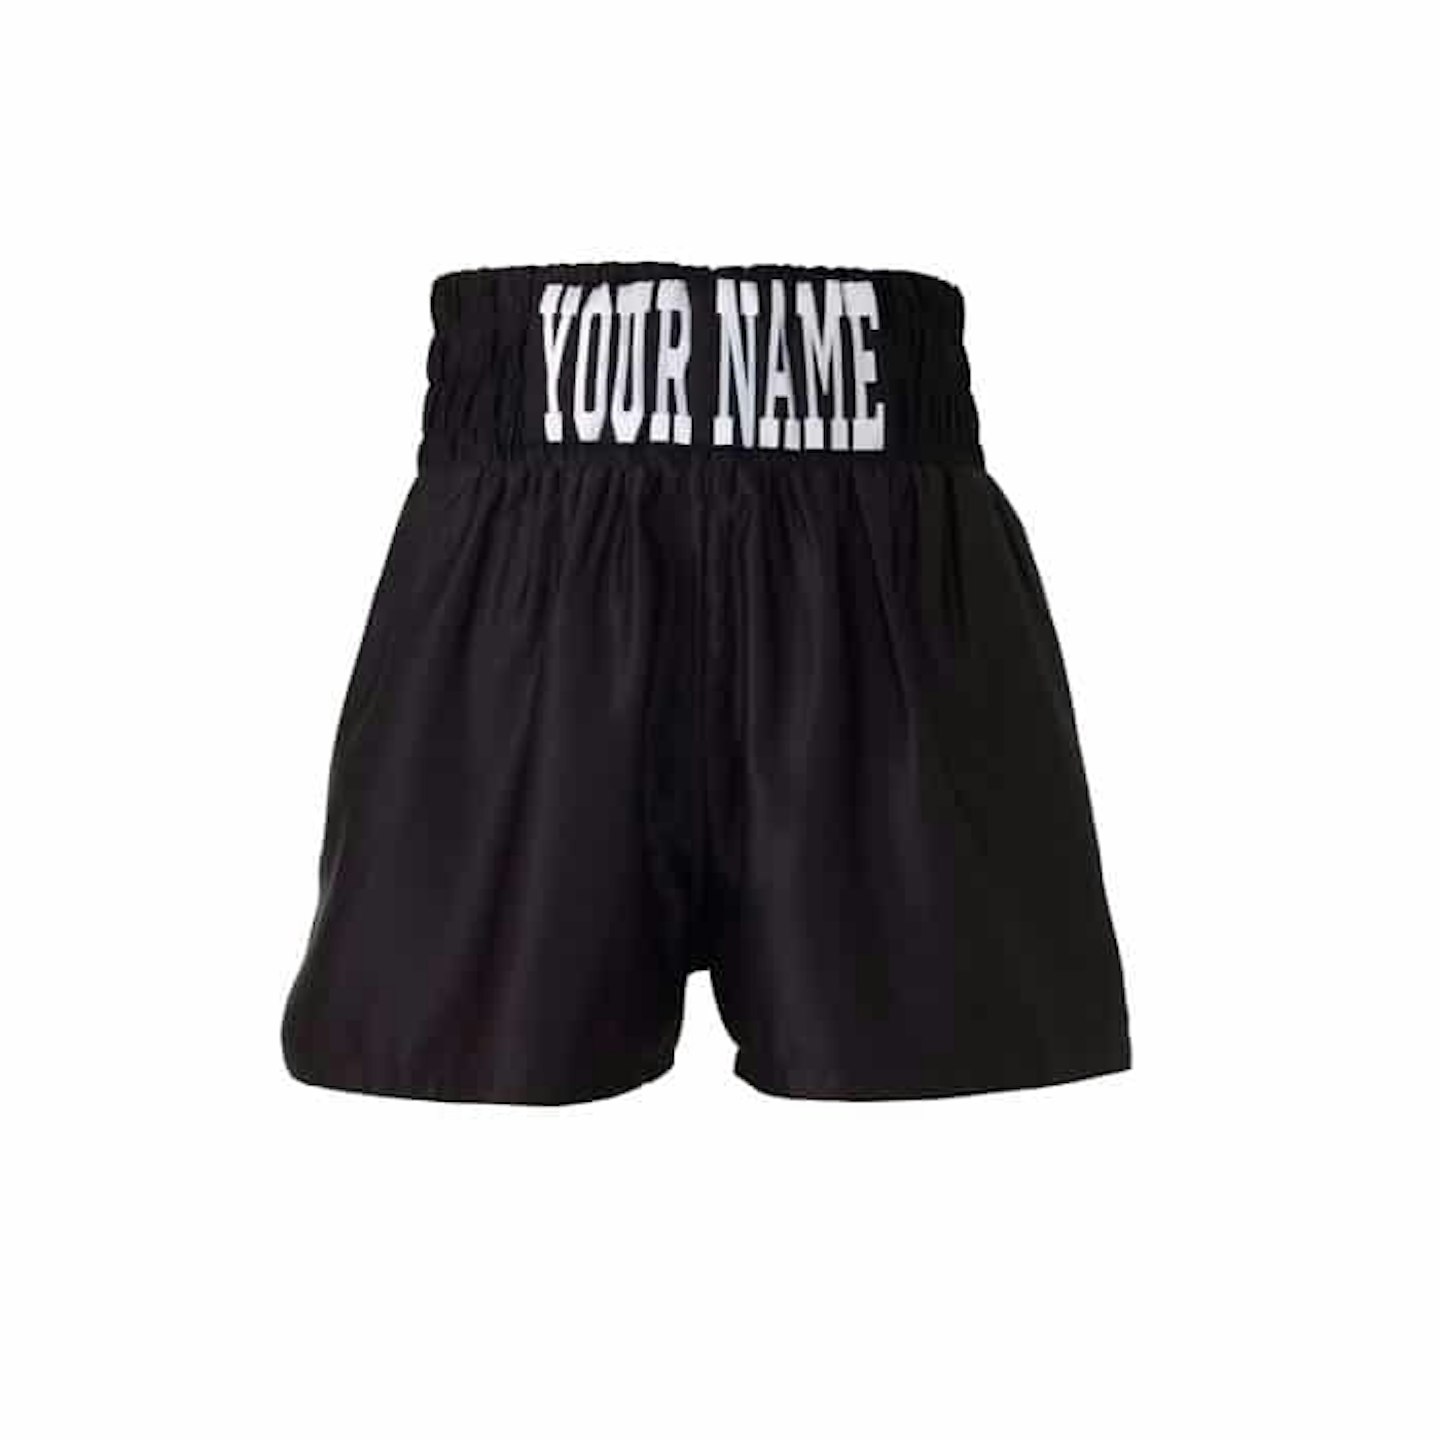 Tyson style boxing shorts